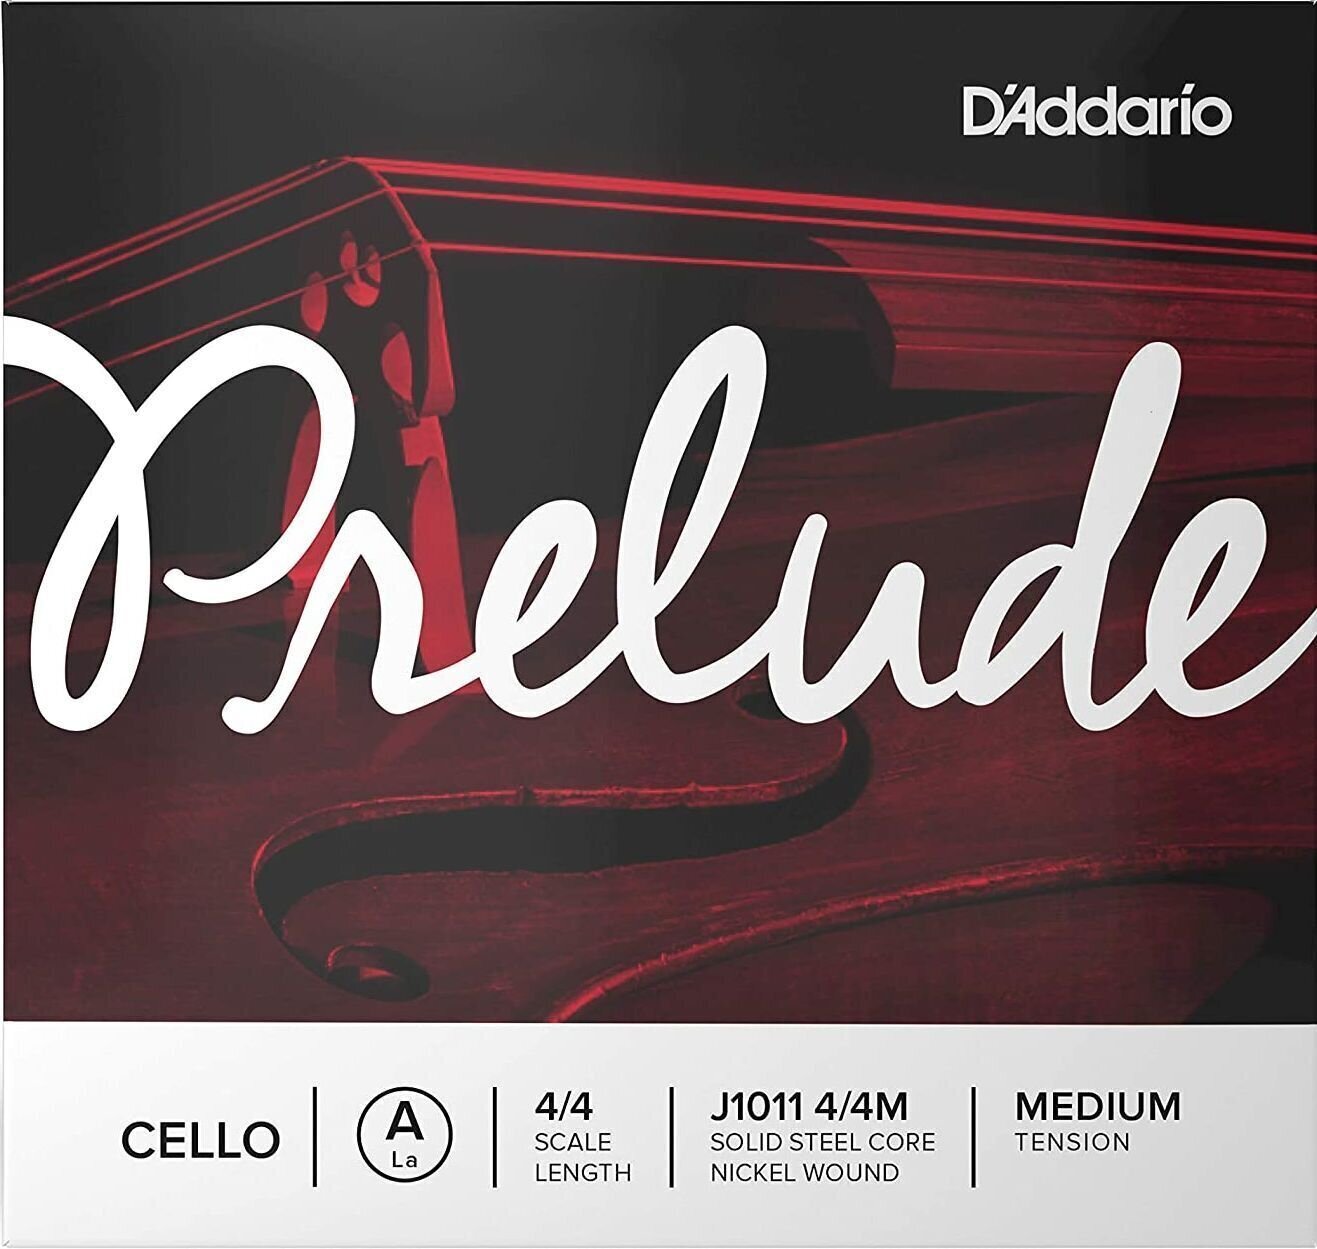 Cello-strenge D'Addario J1011 4/4M Prelude Cello-strenge